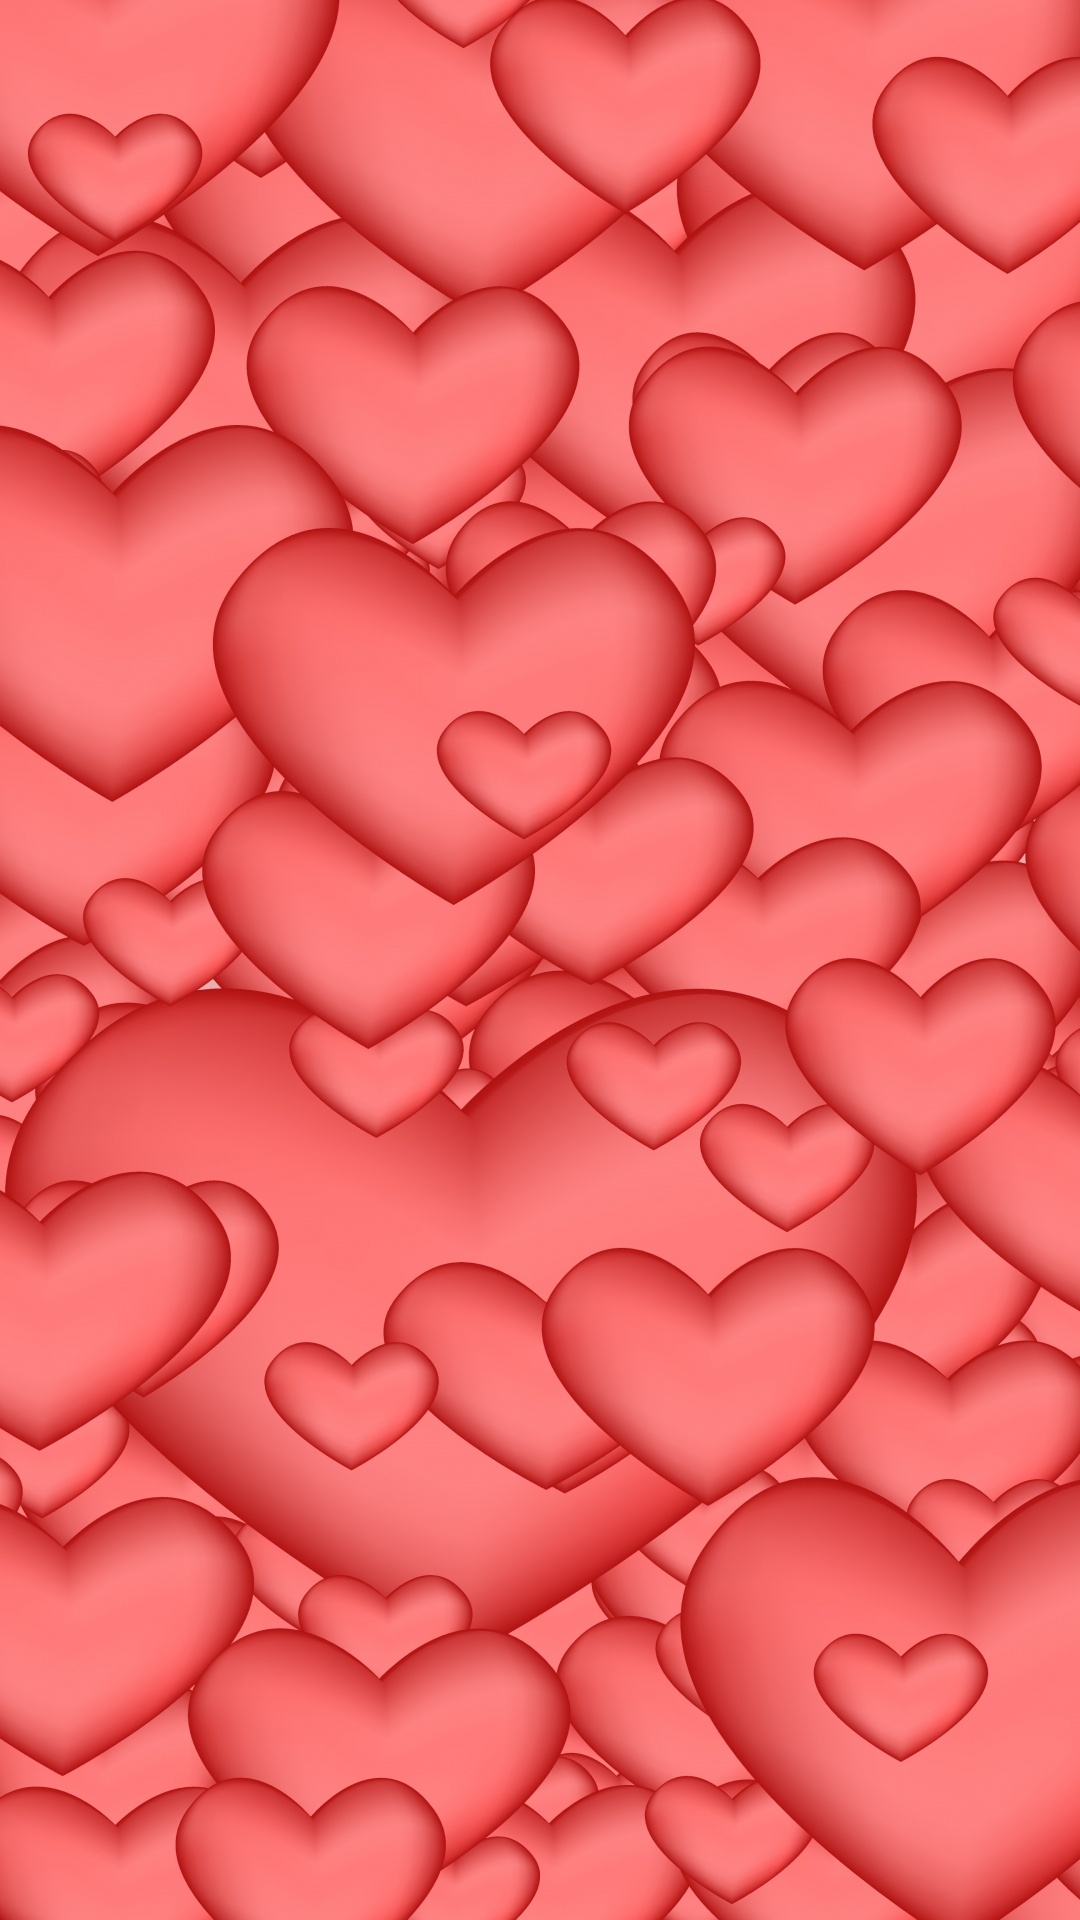 心脏, 粉红色, 红色的, 爱情, 浪漫 壁纸 1080x1920 允许